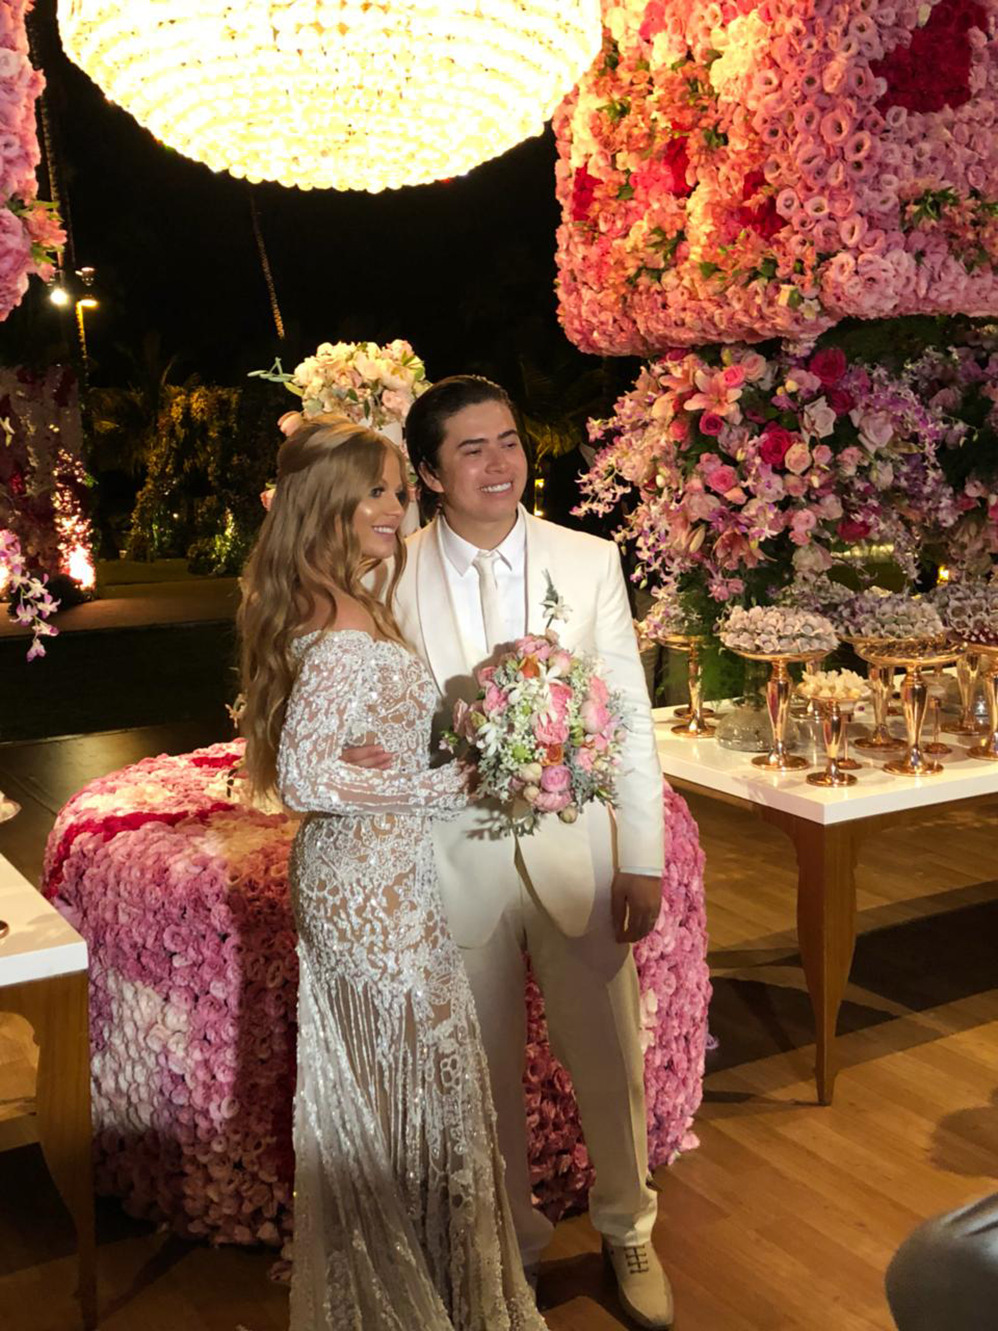 Casamento de Whindersson Nunes chama atenção pela decoração